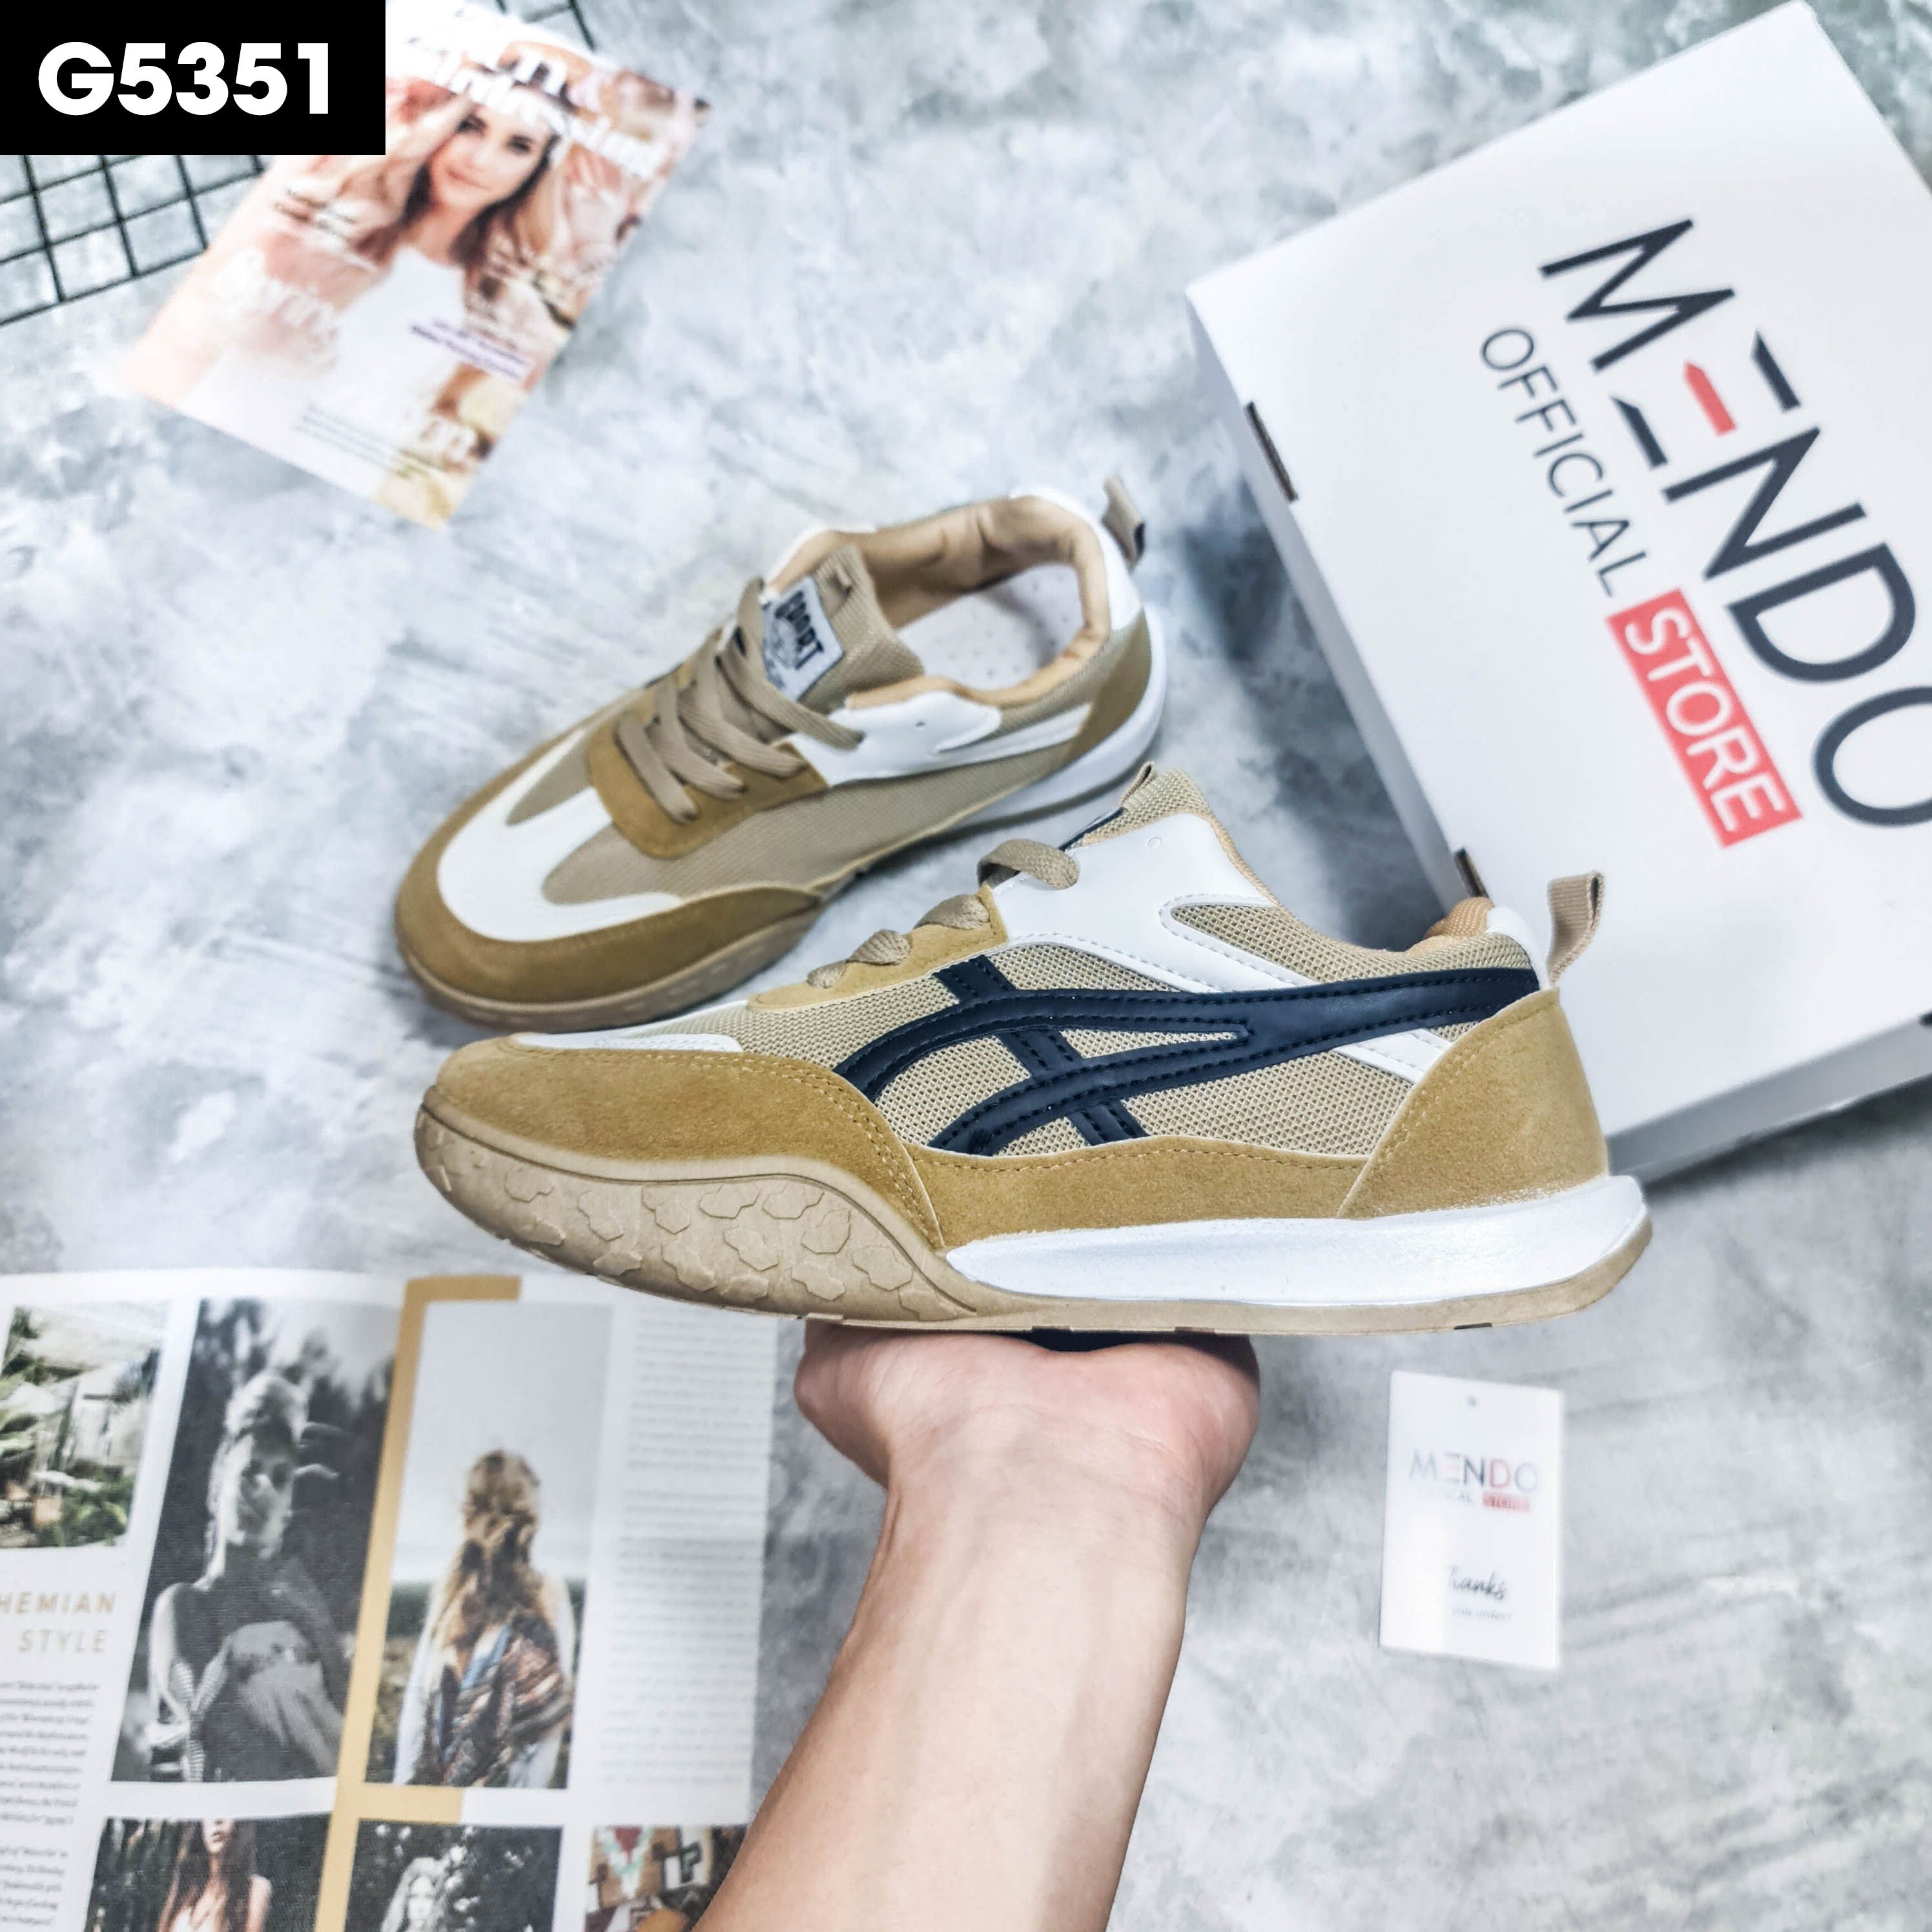 Giày Thể Thao Nam MENDO - Giày Sneaker Màu Đen - Trắng - Kaki, Giày Thể Thao Dáng Hàn Quốc, Phù Hợp Mọi Lứa Tuổi  - G5341